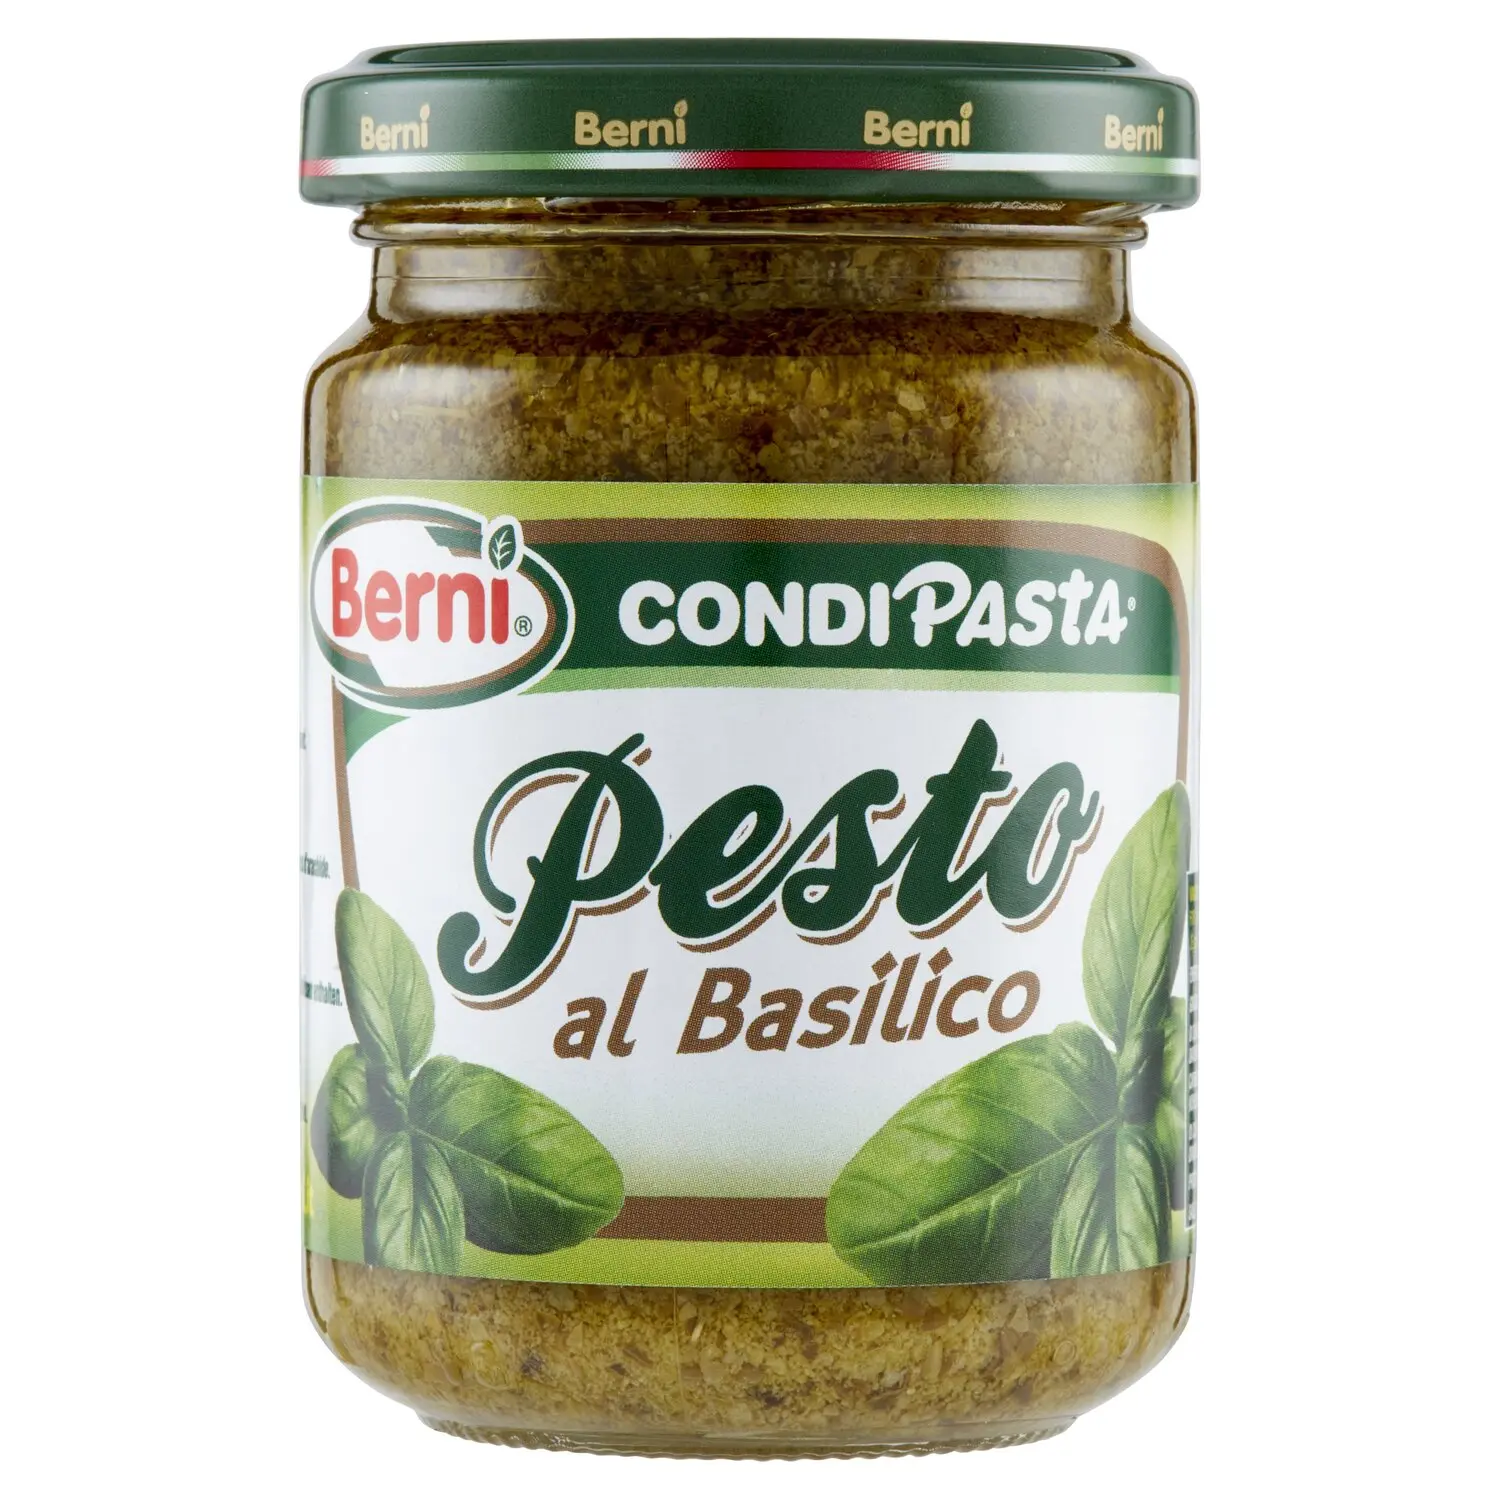 Berni CondiPasta Pesto al Basilico 135 g